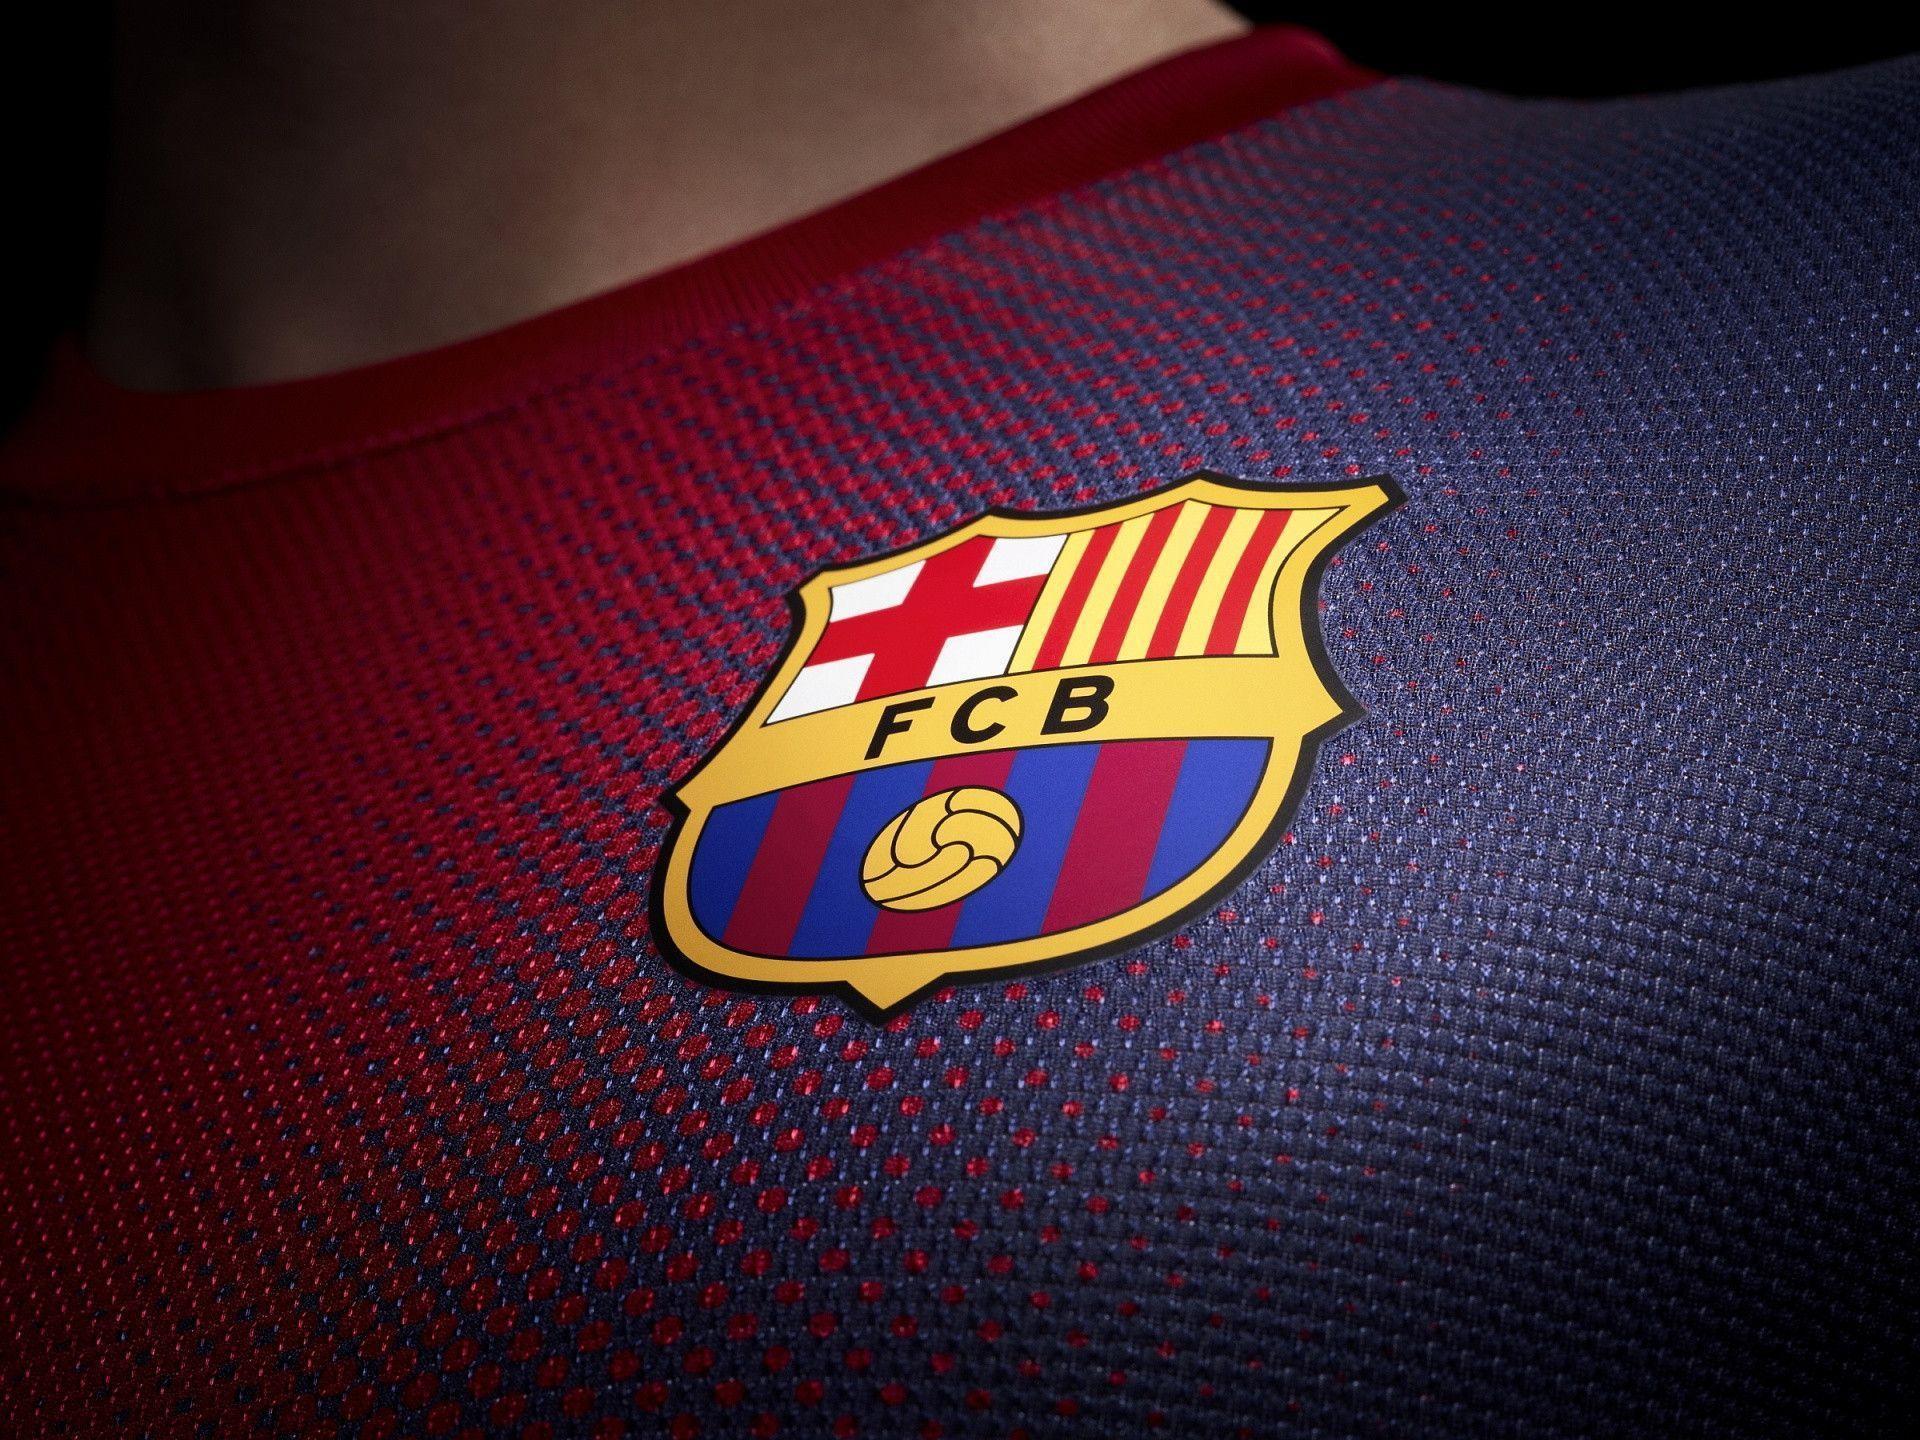 Logo Barcelona - biểu tượng của một thương hiệu bóng đá hàng đầu thế giới. Nếu bạn là fan hâm mộ của Barca, hãy xem ảnh này để thể hiện tình yêu và niềm tự hào dành cho đội bóng.